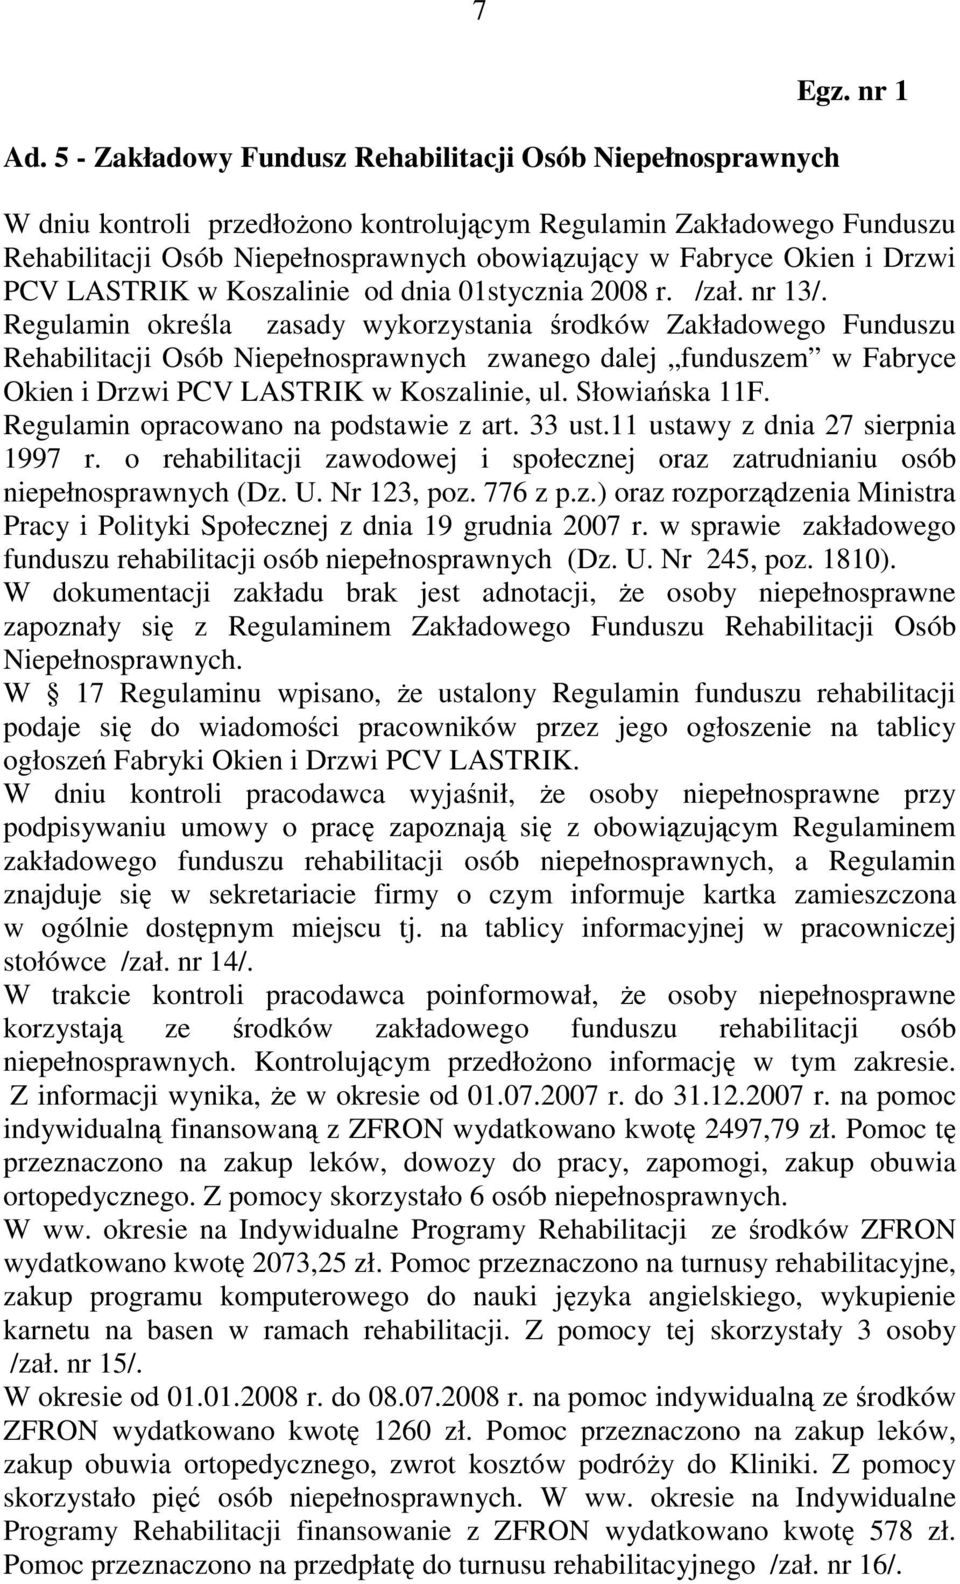 Regulamin określa zasady wykorzystania środków Zakładowego Funduszu Rehabilitacji Osób Niepełnosprawnych zwanego dalej funduszem w Fabryce Okien i Drzwi PCV LASTRIK w Koszalinie, ul. Słowiańska 11F.